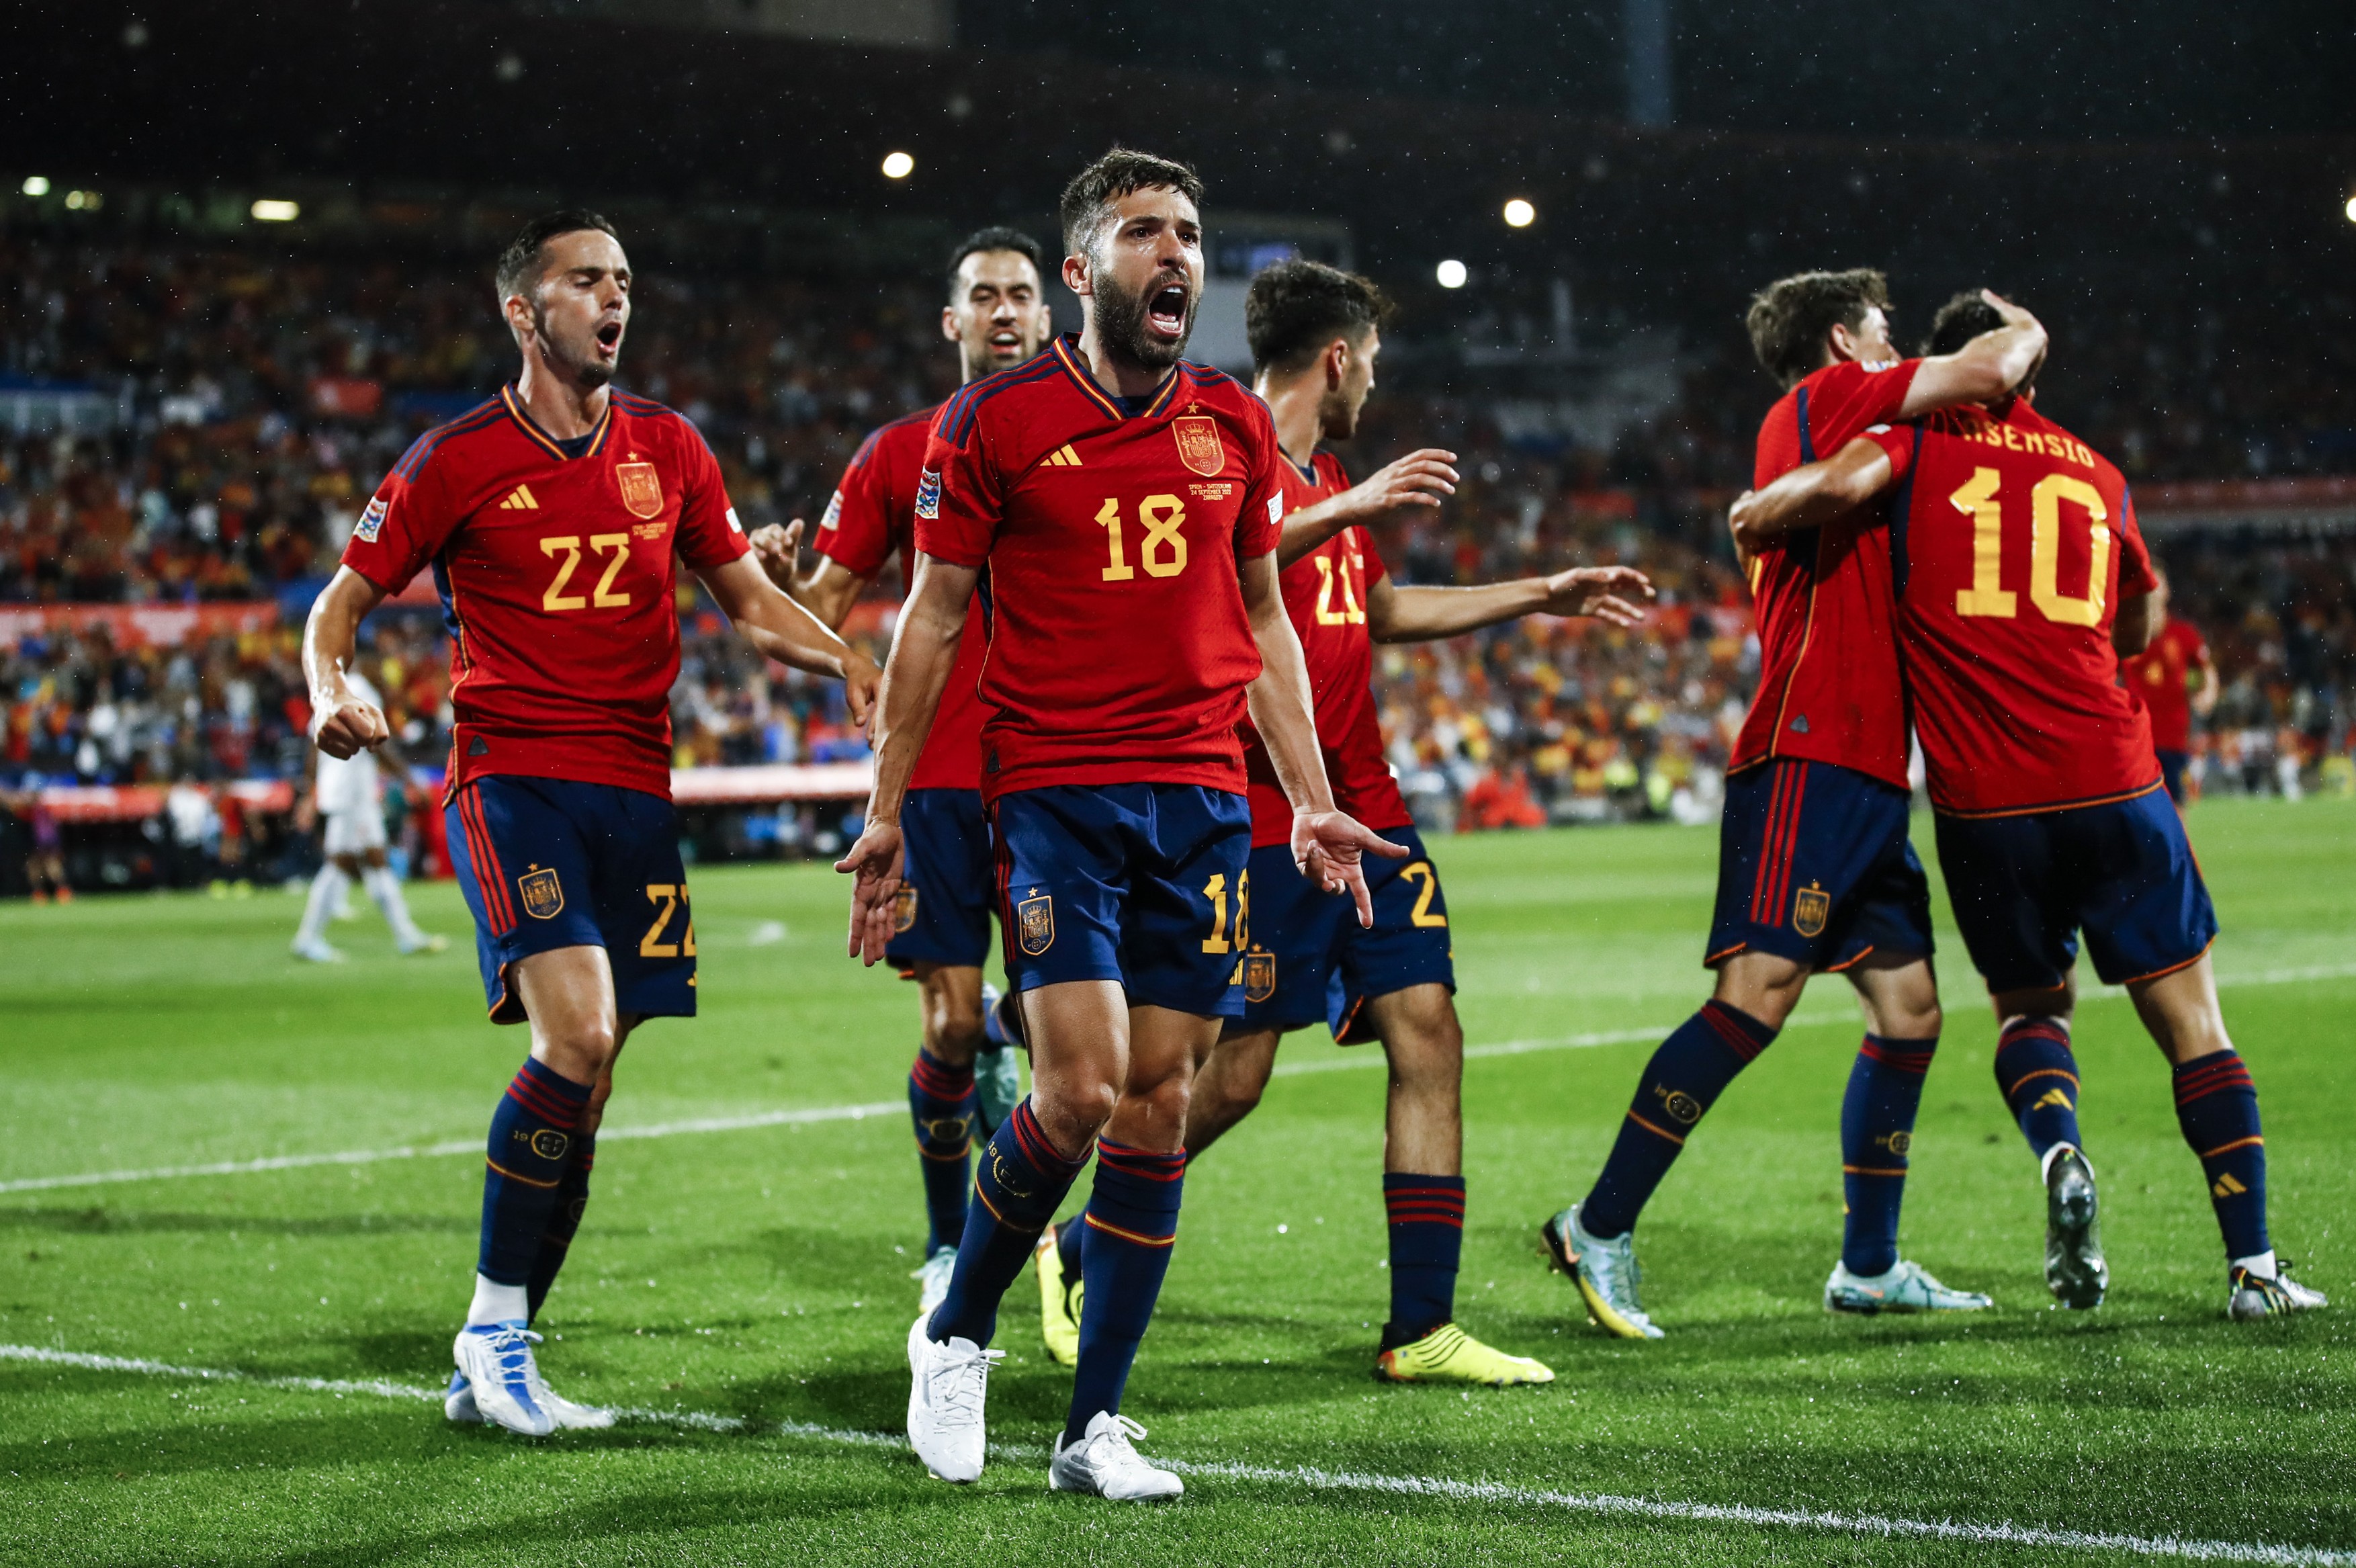 Spania - Costa Rica, LIVE TEXT, 18:00, digisport.ro. Primul meci oficial dintre cele două țări are loc la Cupa Mondială